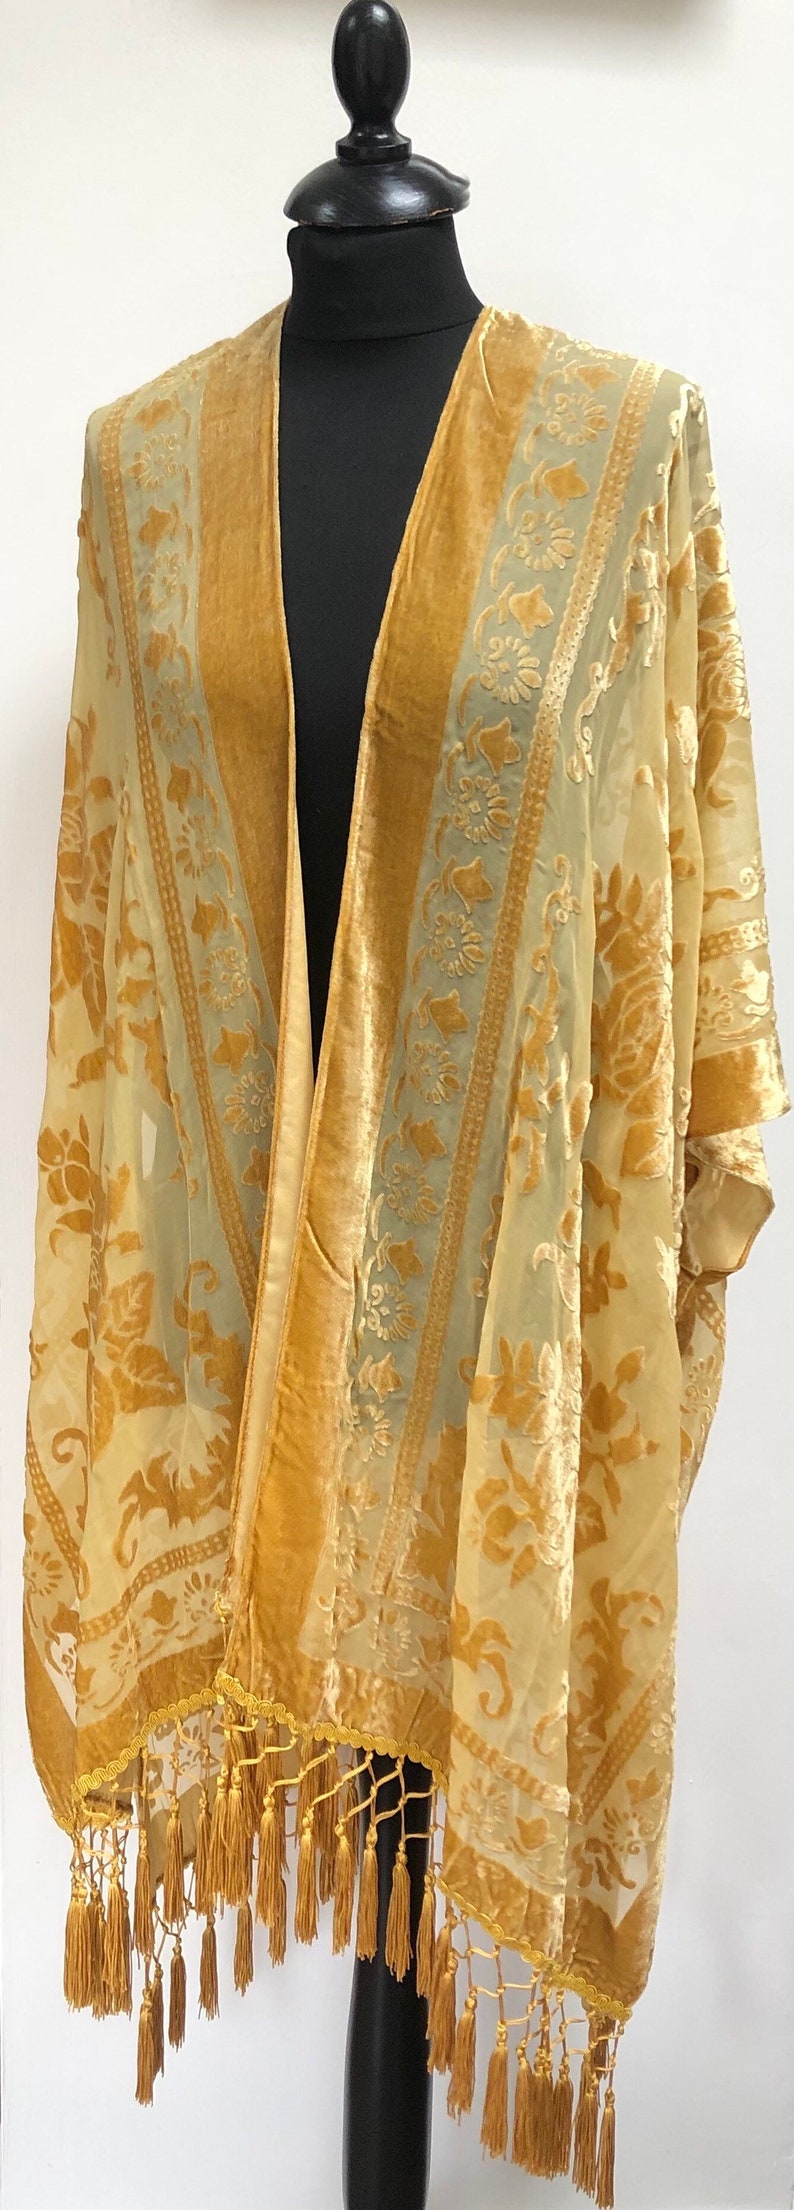 Velvet Burn out Devore Fringed Tassel Trim Opera Kimono Jacket Various Colours Green now in stock One Size image 3